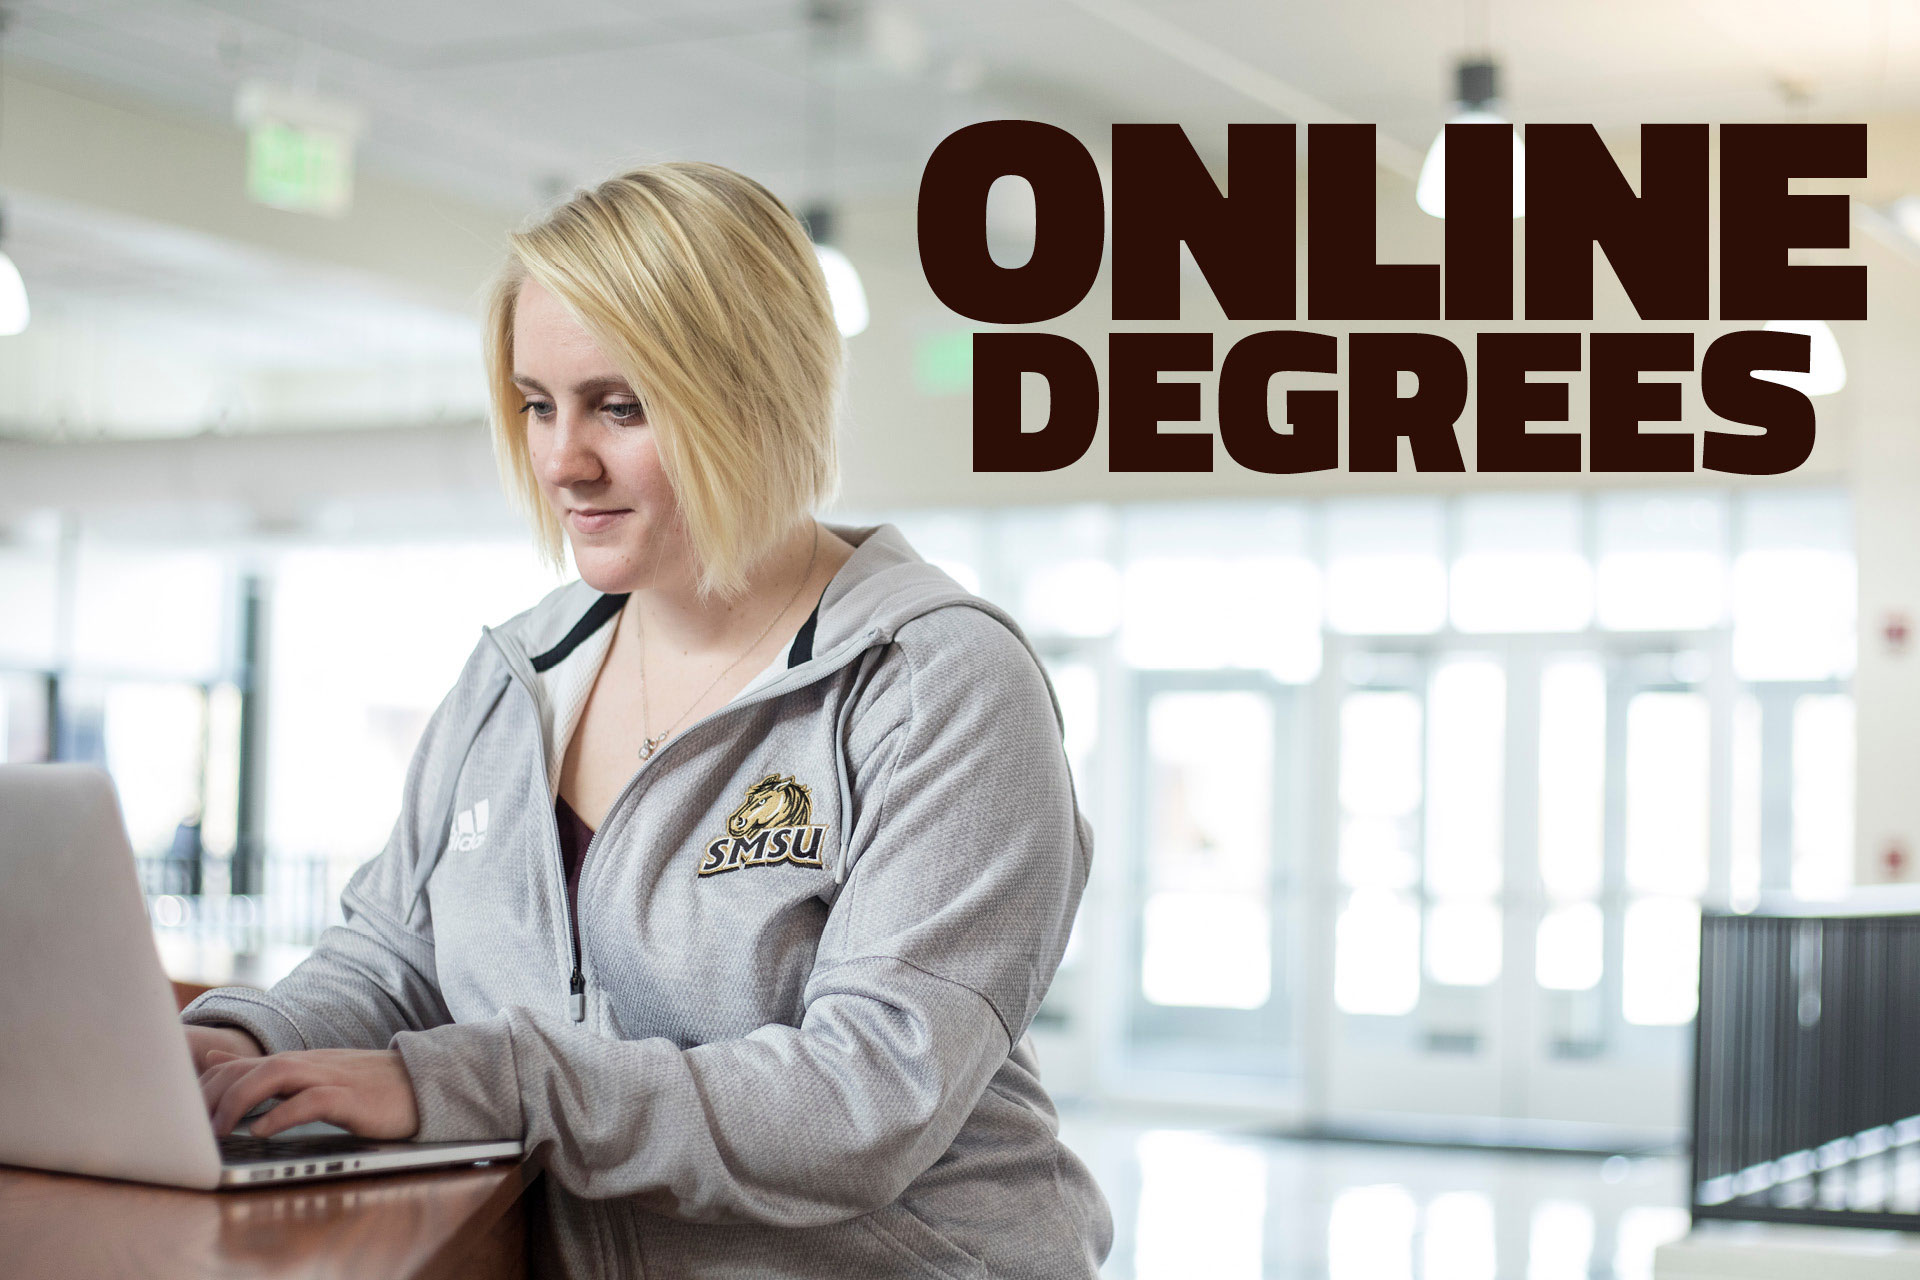 SMSU Online Degrees